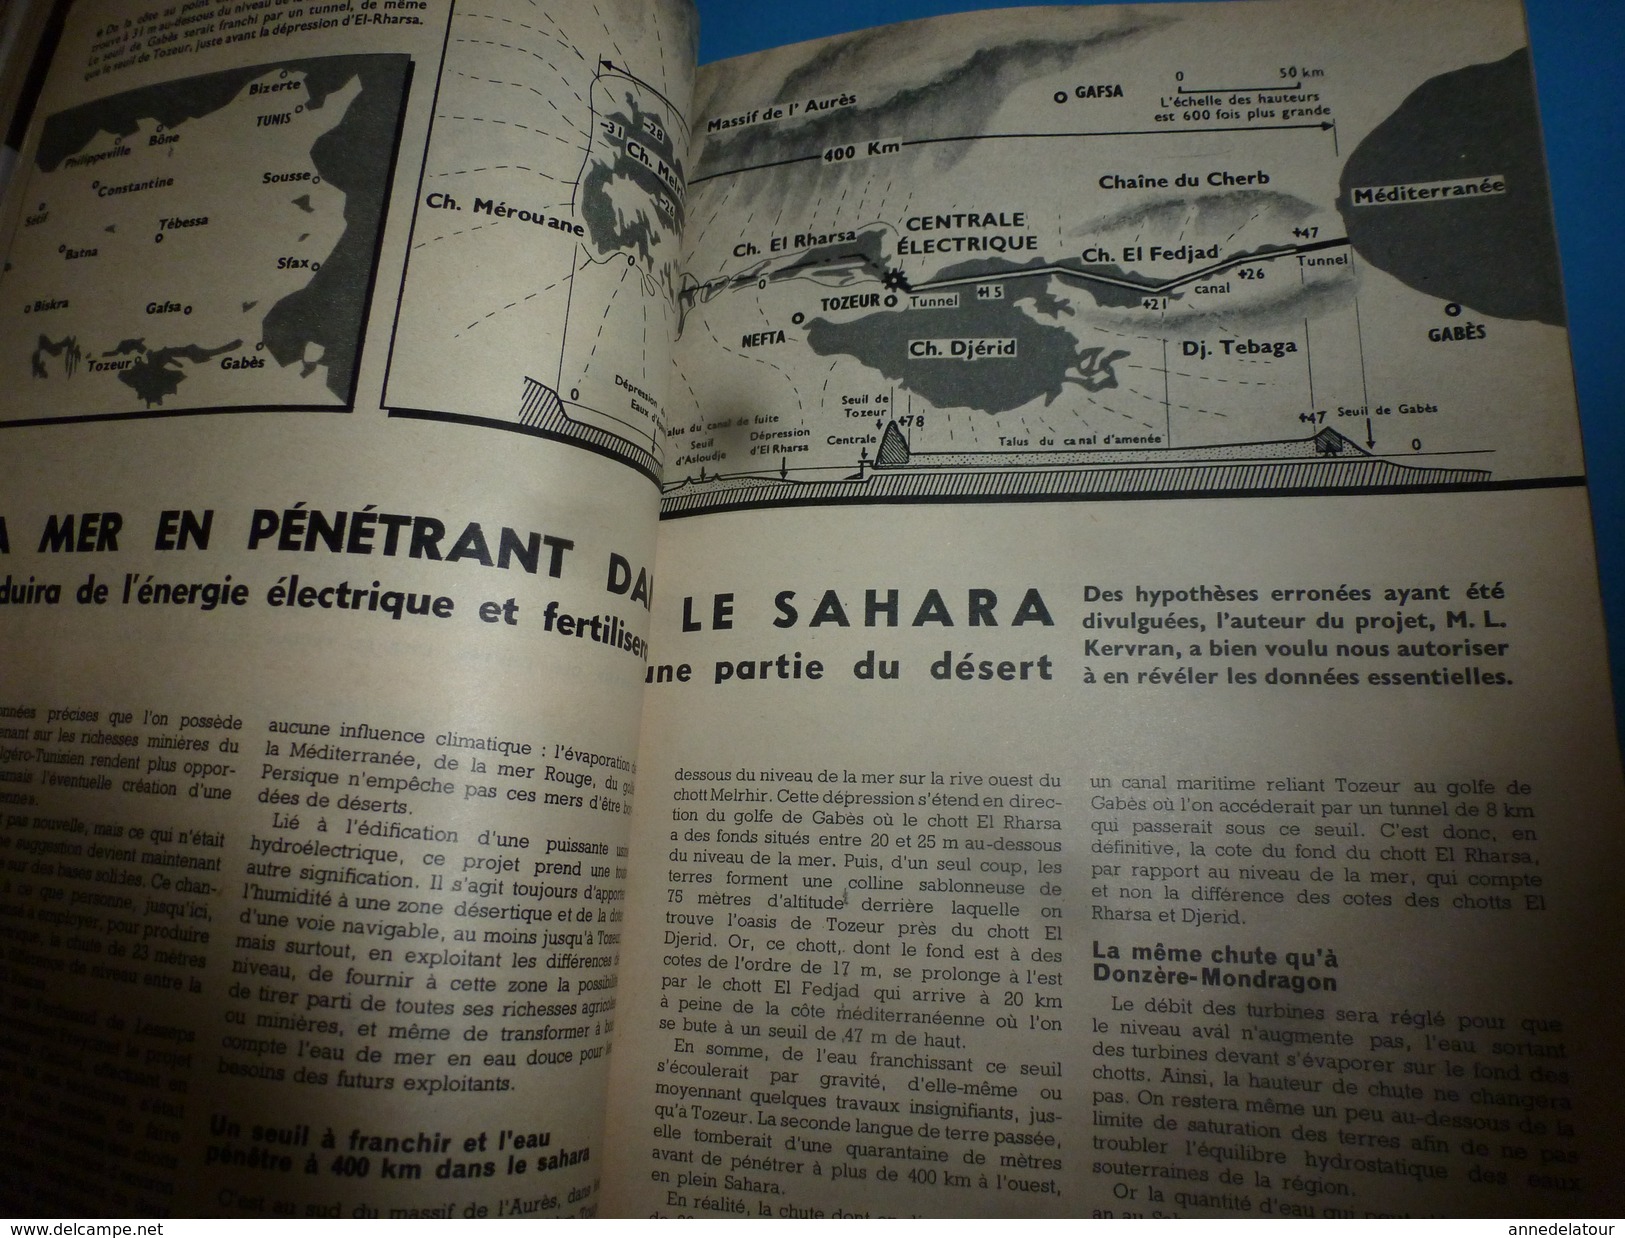 1954 SCIENCE Et VIE  N° 444--> Le Projet Fou D'une Mer Dans Le Sahara; Le Porte-avion Volant; Etc - Science